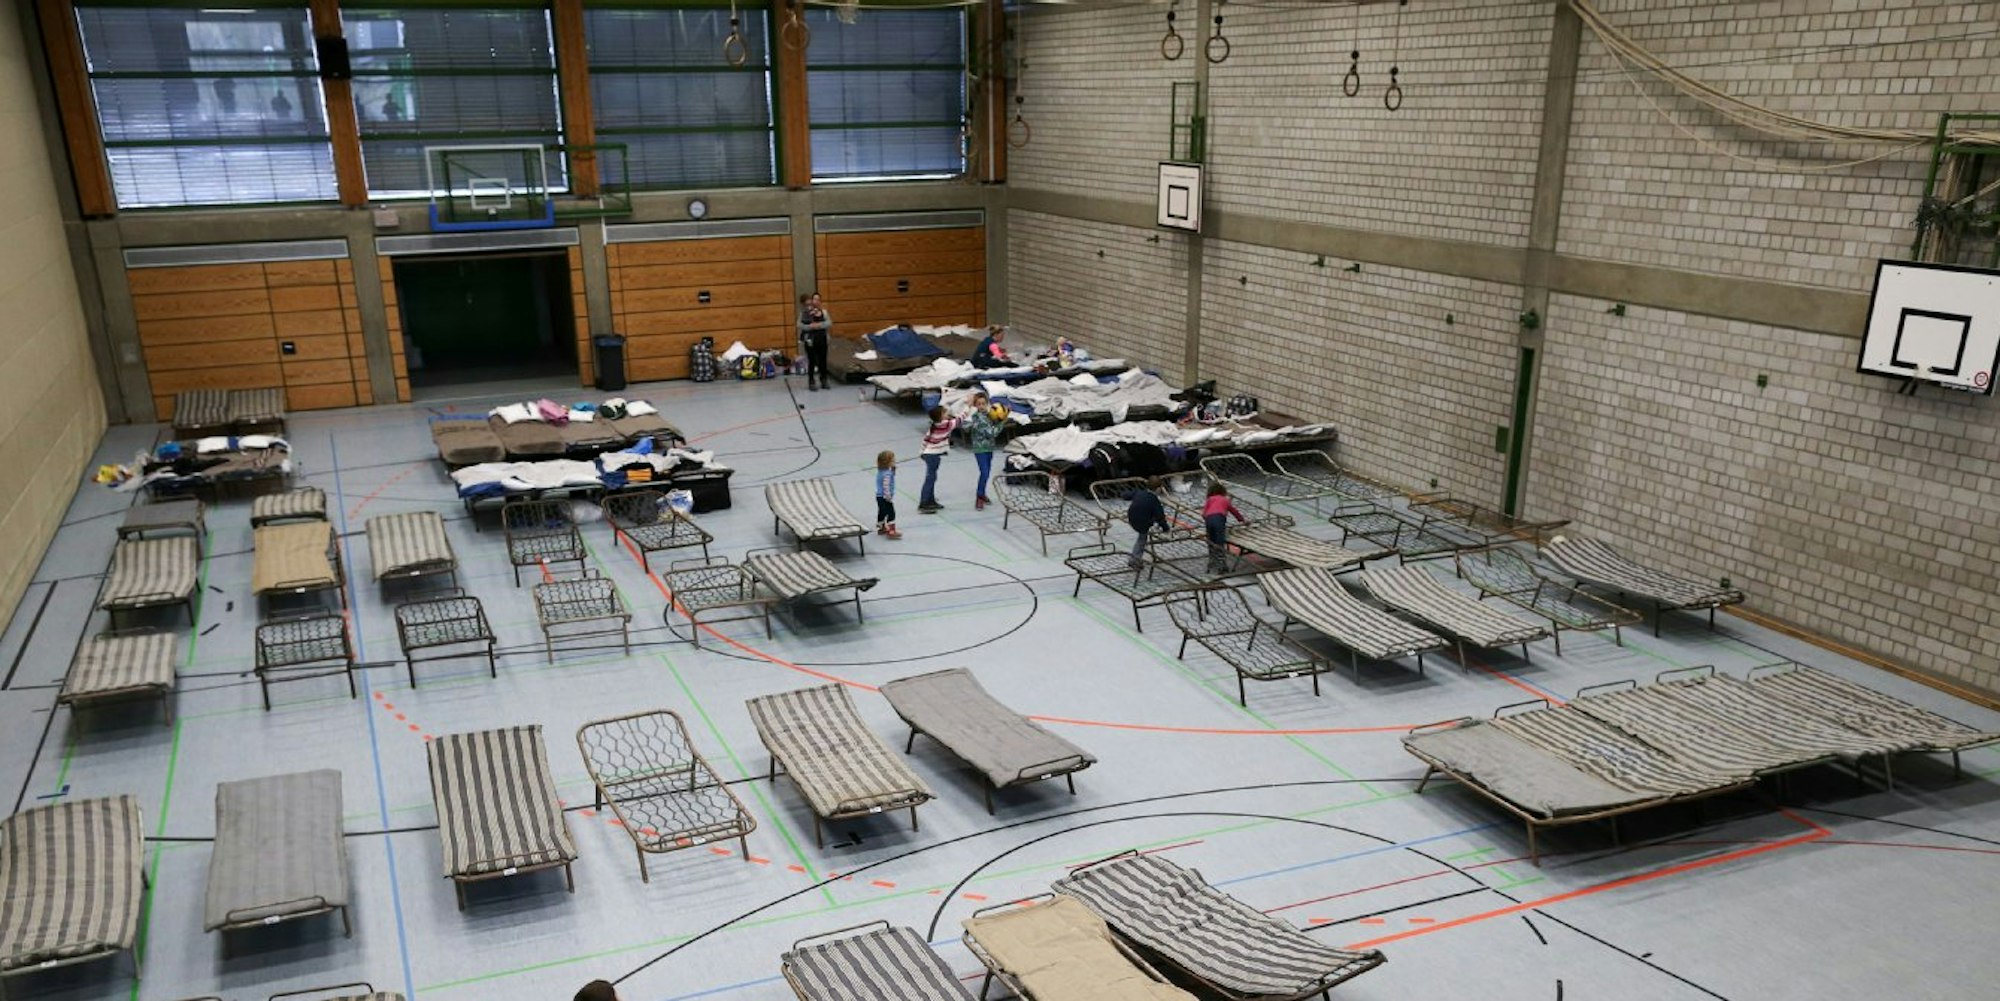 Viele Turnhallen werden als Flüchtlingsunterkunft genutzt.